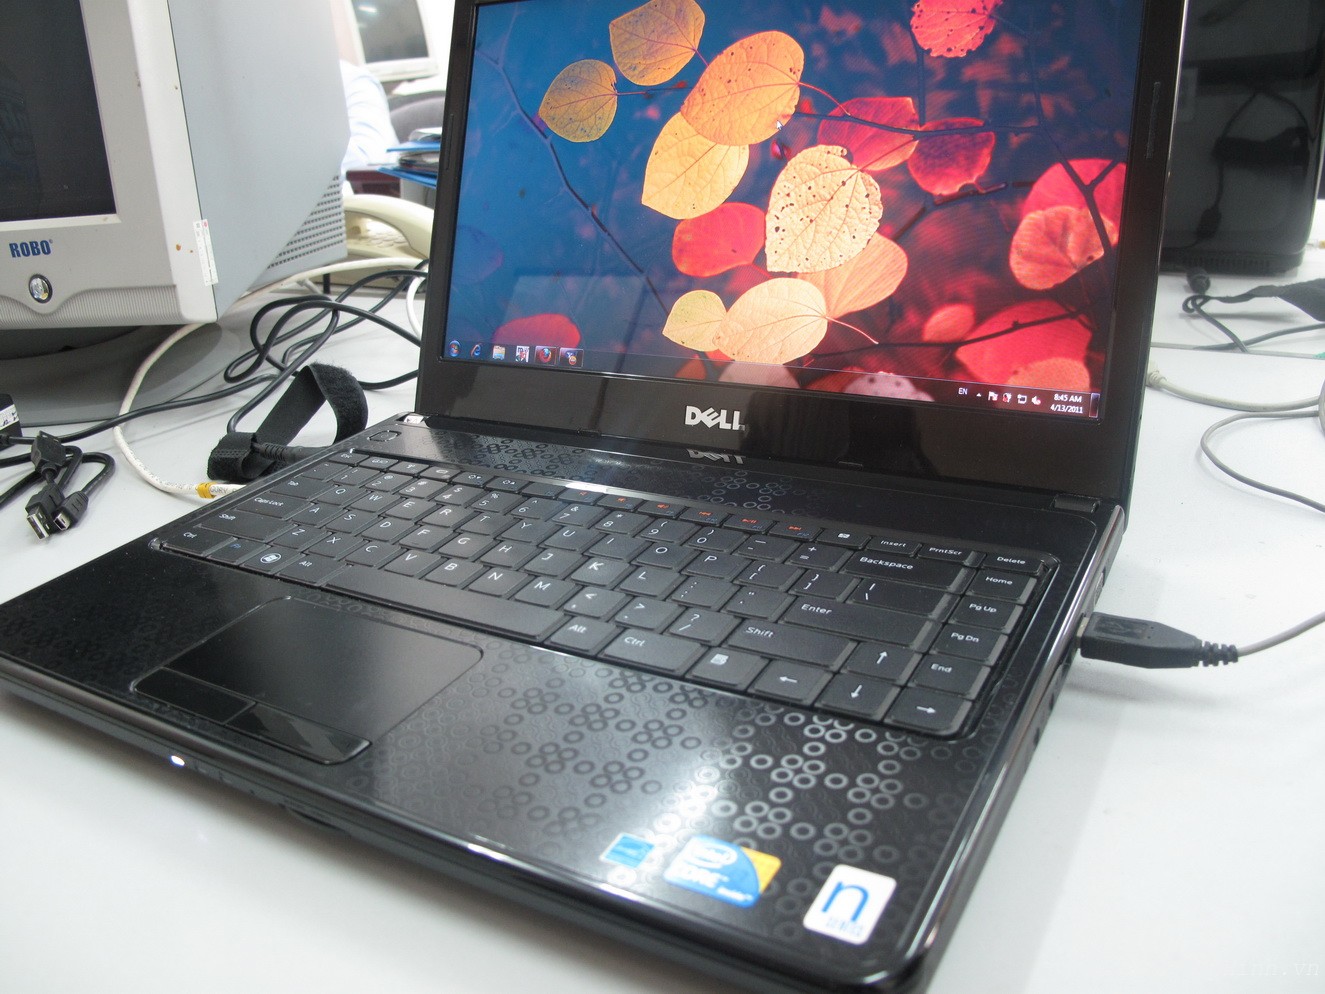 Spesifikasi dan Harga Laptop Dell Inspiron N4030 Terbaru Maret 2015 ...